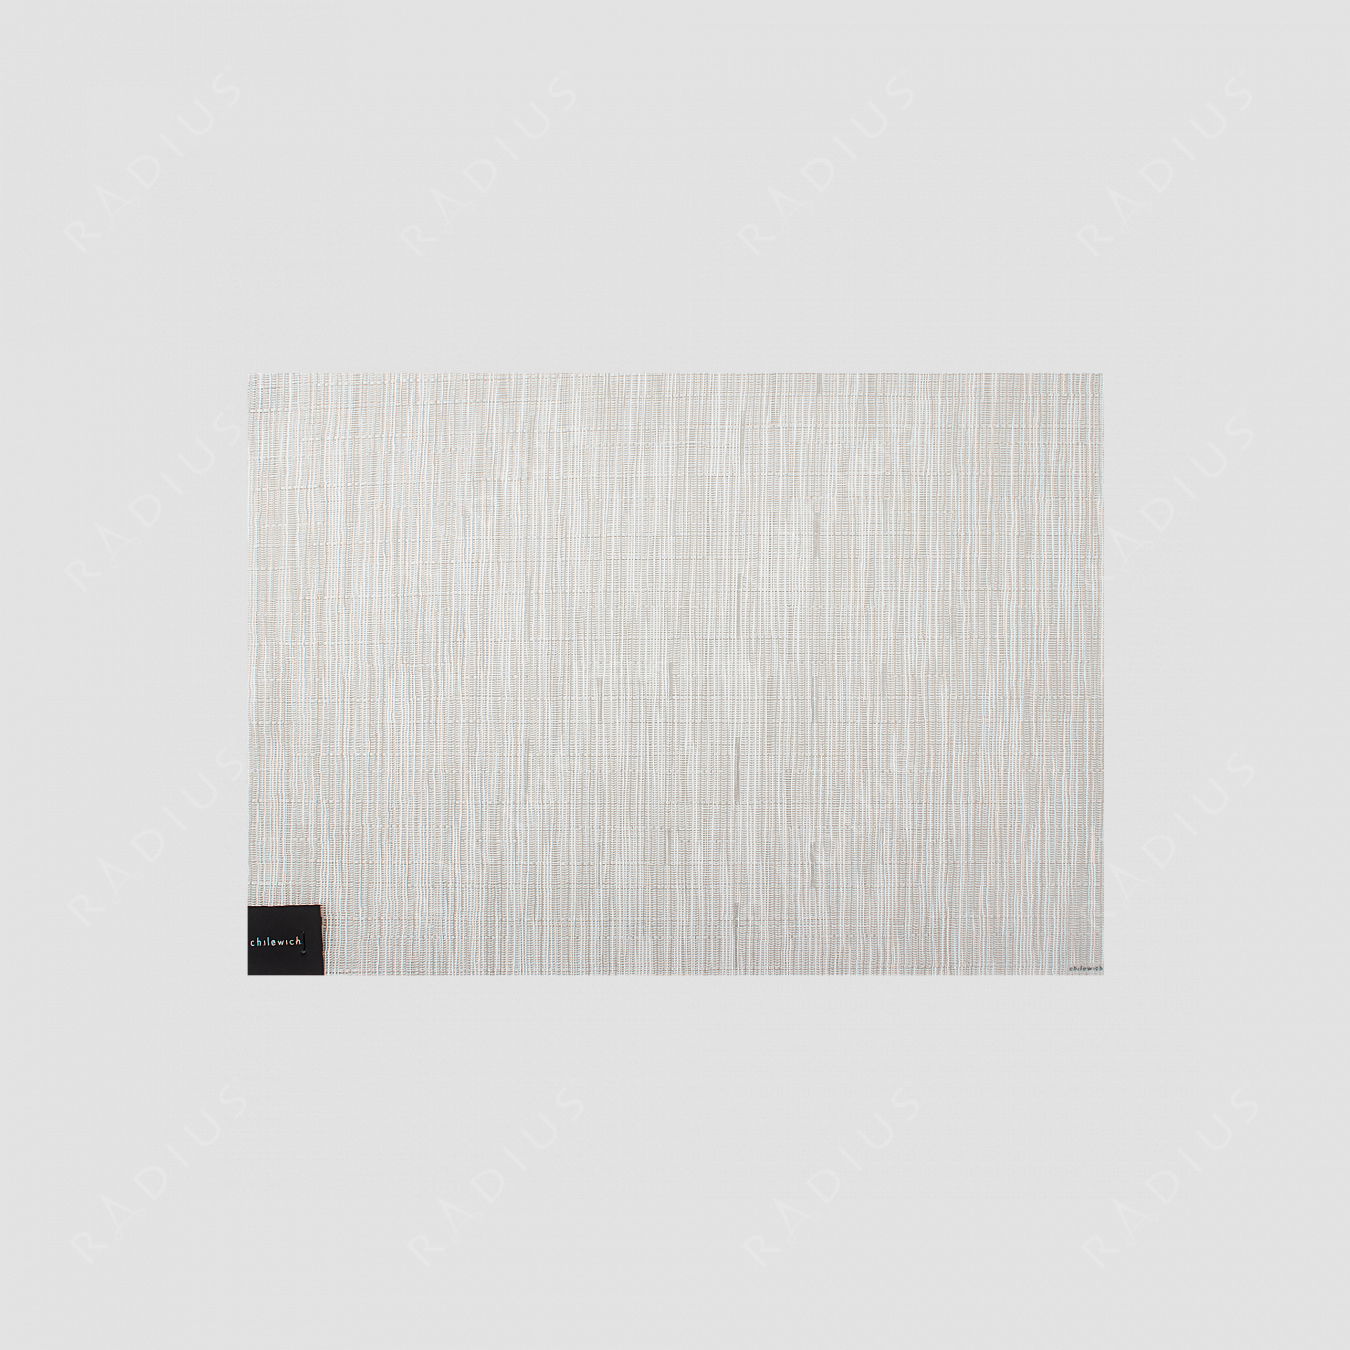 Салфетка подстановочная, жаккардовое плетение, винил, (36х48) Coconut, серия Bamboo, CHILEWICH, США